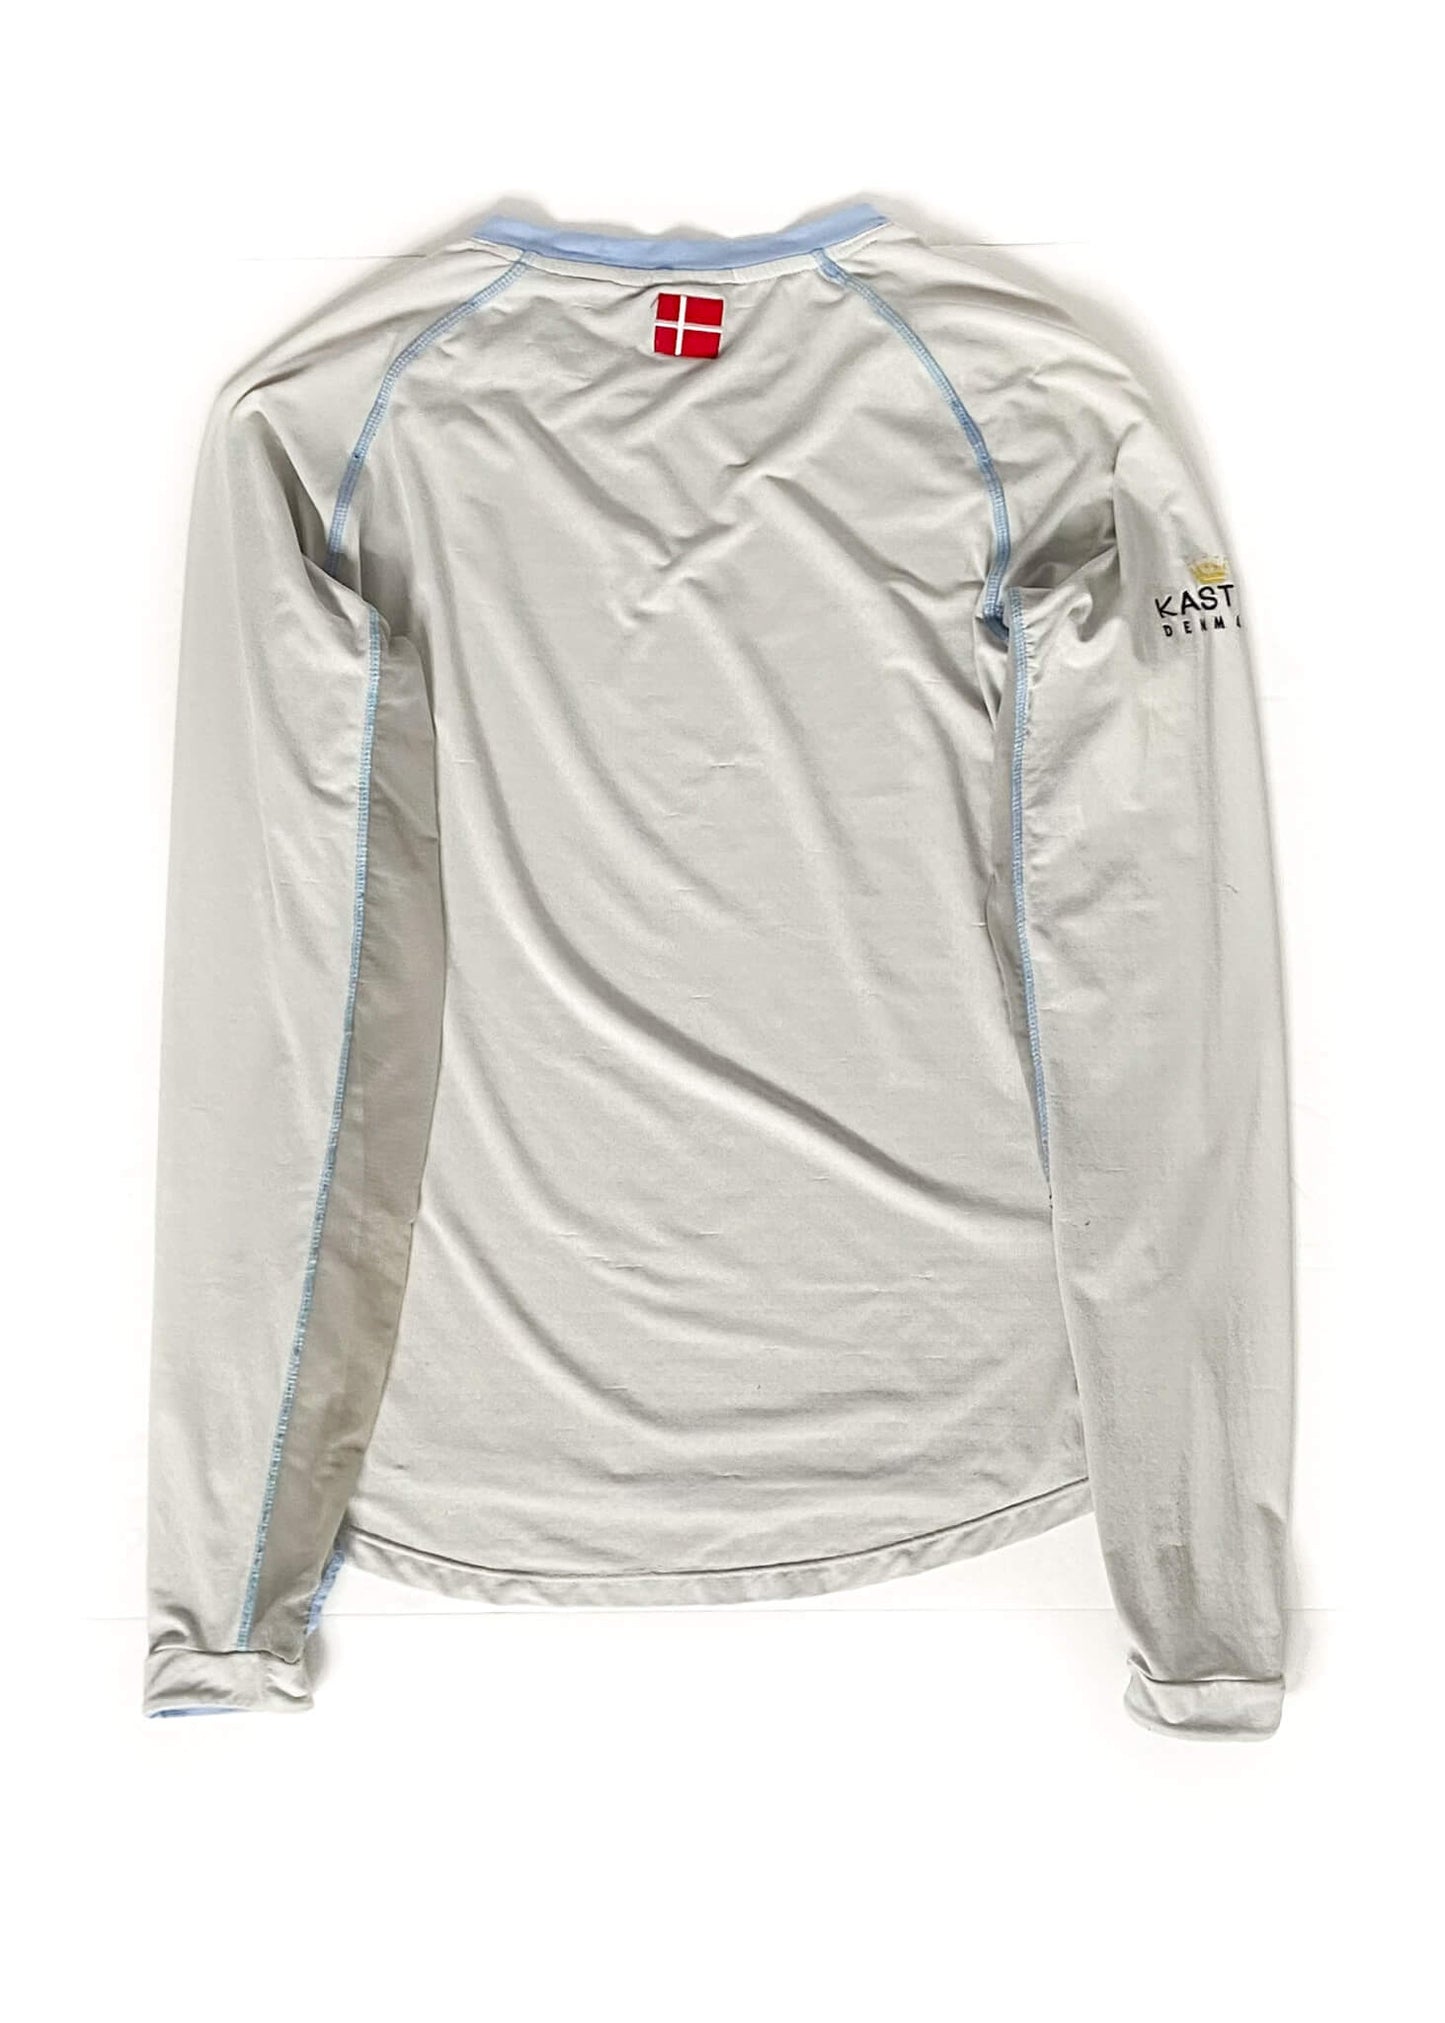 Kastel Denmark Crew Neck Sun Shirt - White - Women's Medium